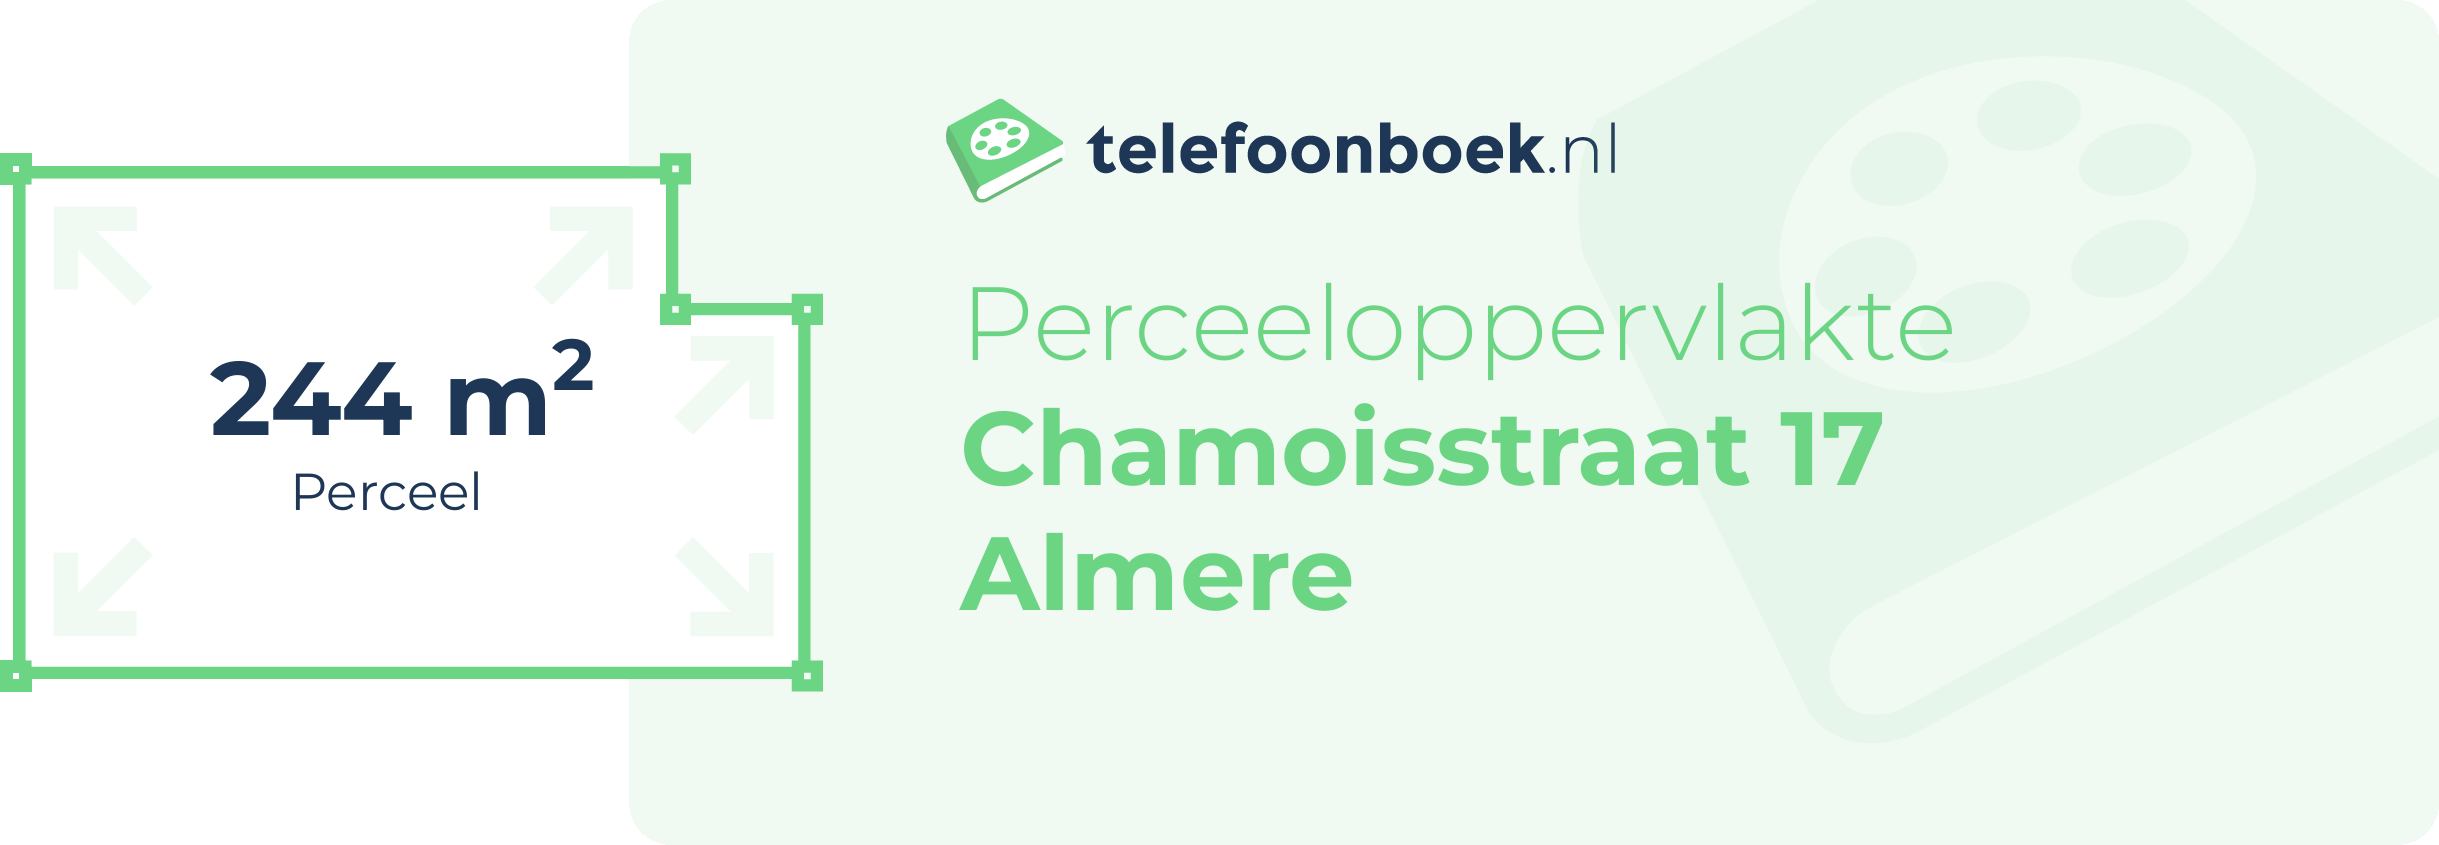 Perceeloppervlakte Chamoisstraat 17 Almere